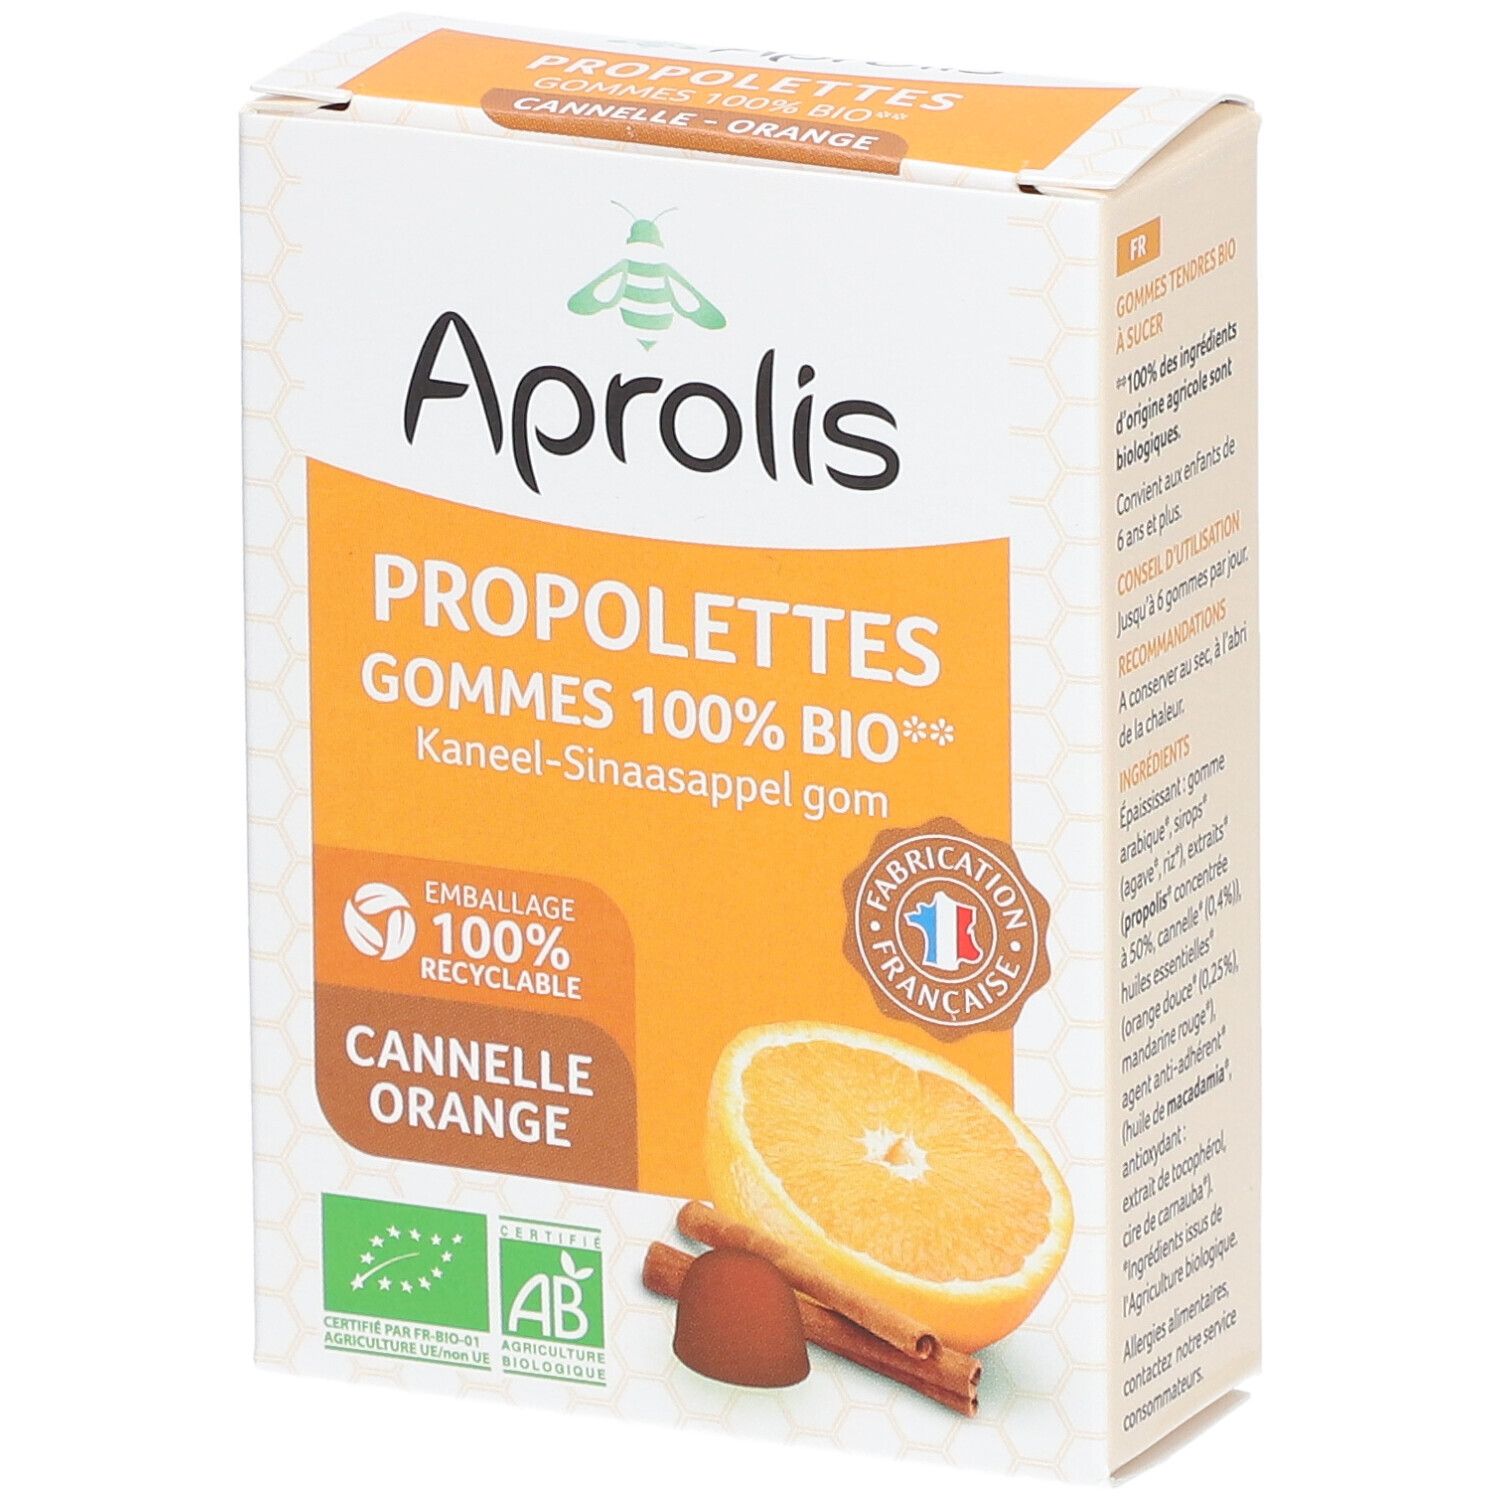 Aprolis® Propolettes 100% BIO Cannelle-Orange